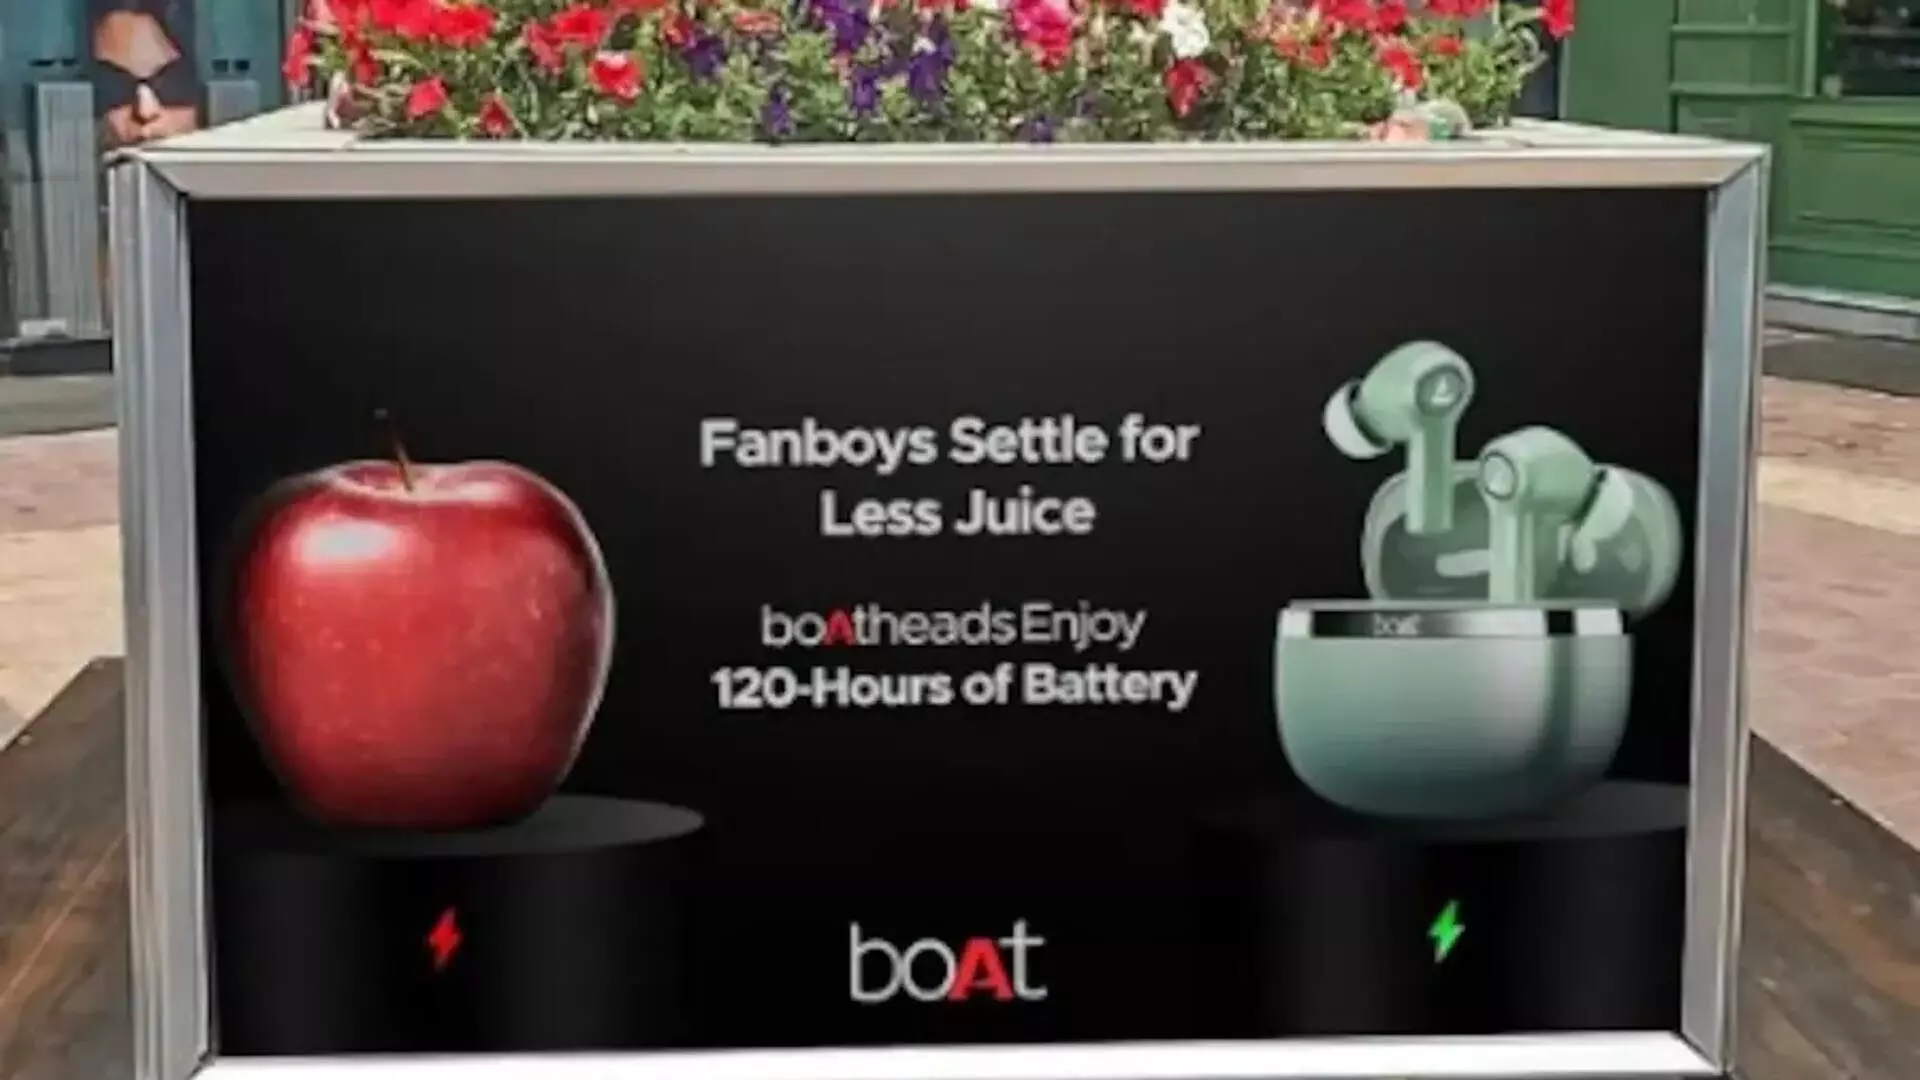 डोंट बी ए फैनबॉय: BoAt के नए विज्ञापन ने Apple, इंटरनेट को विभाजित कर दिया